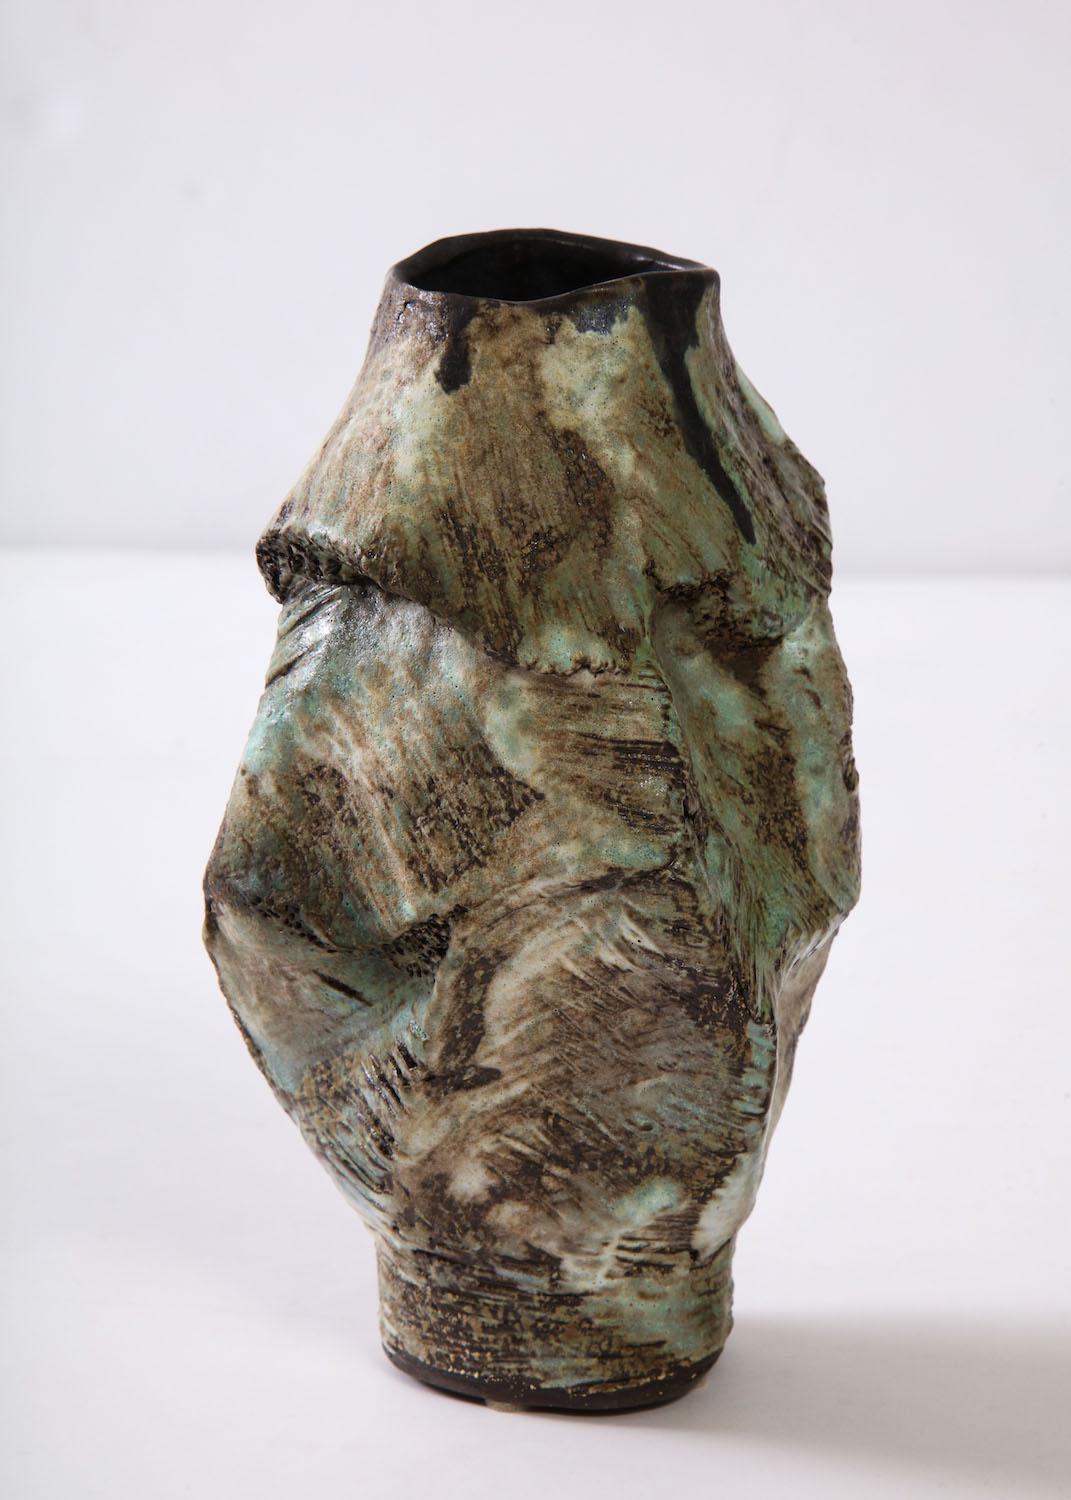 American Sculptural Vase #7 by Dena Zemsky